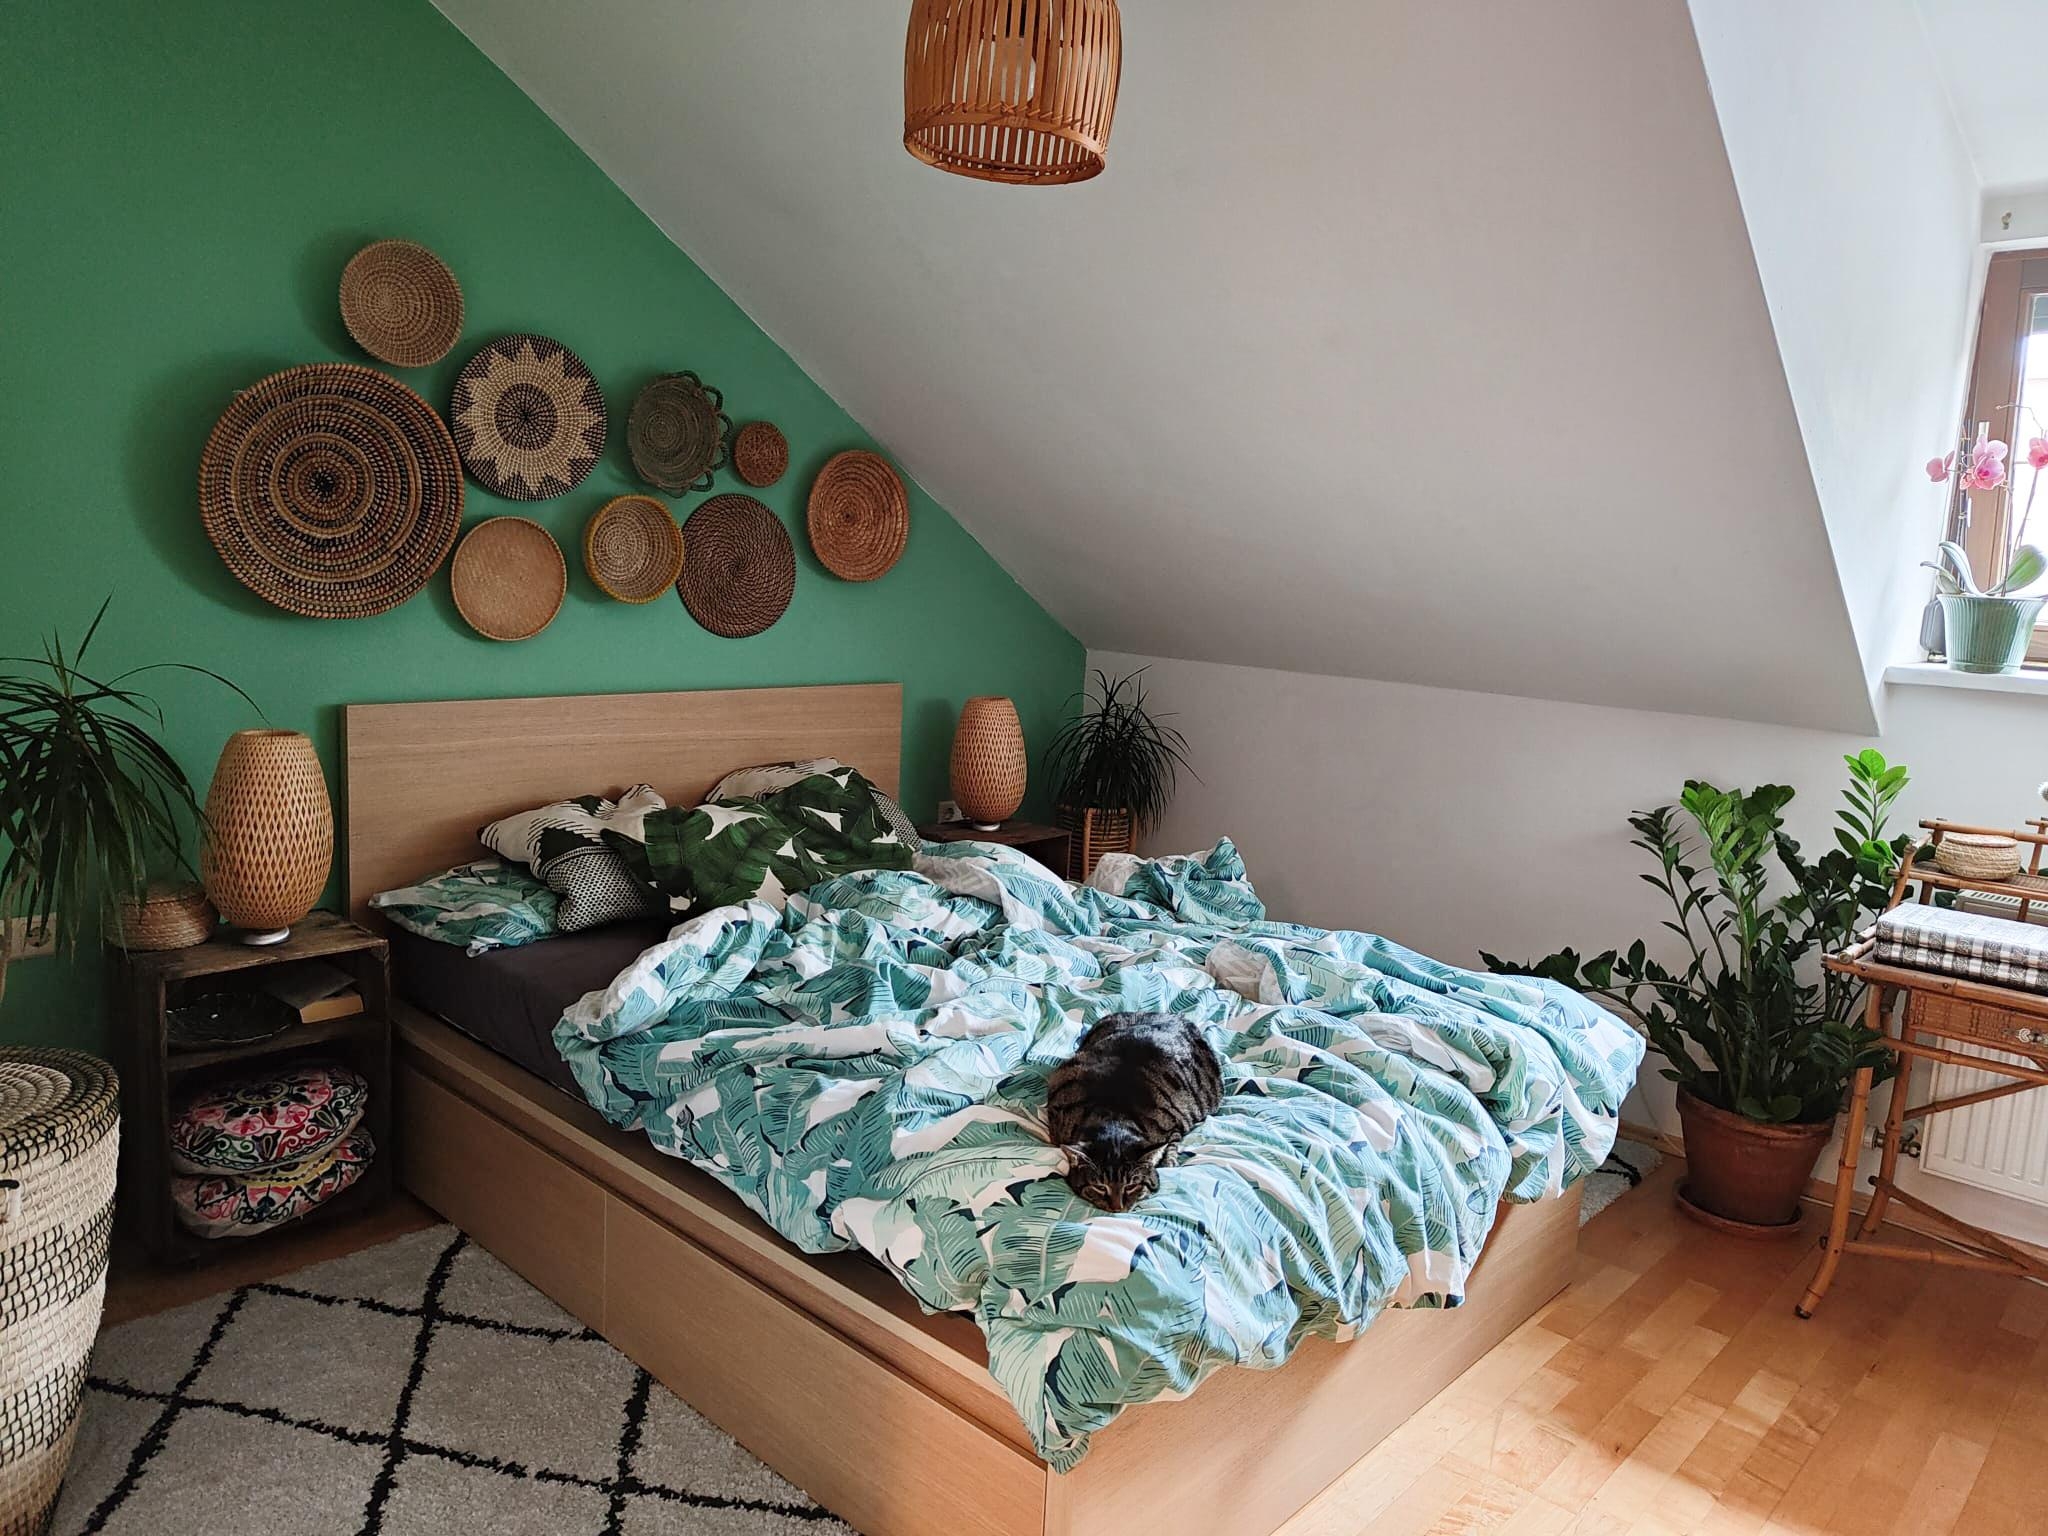 Loli 🐱❤️ #bedroom #houseplants